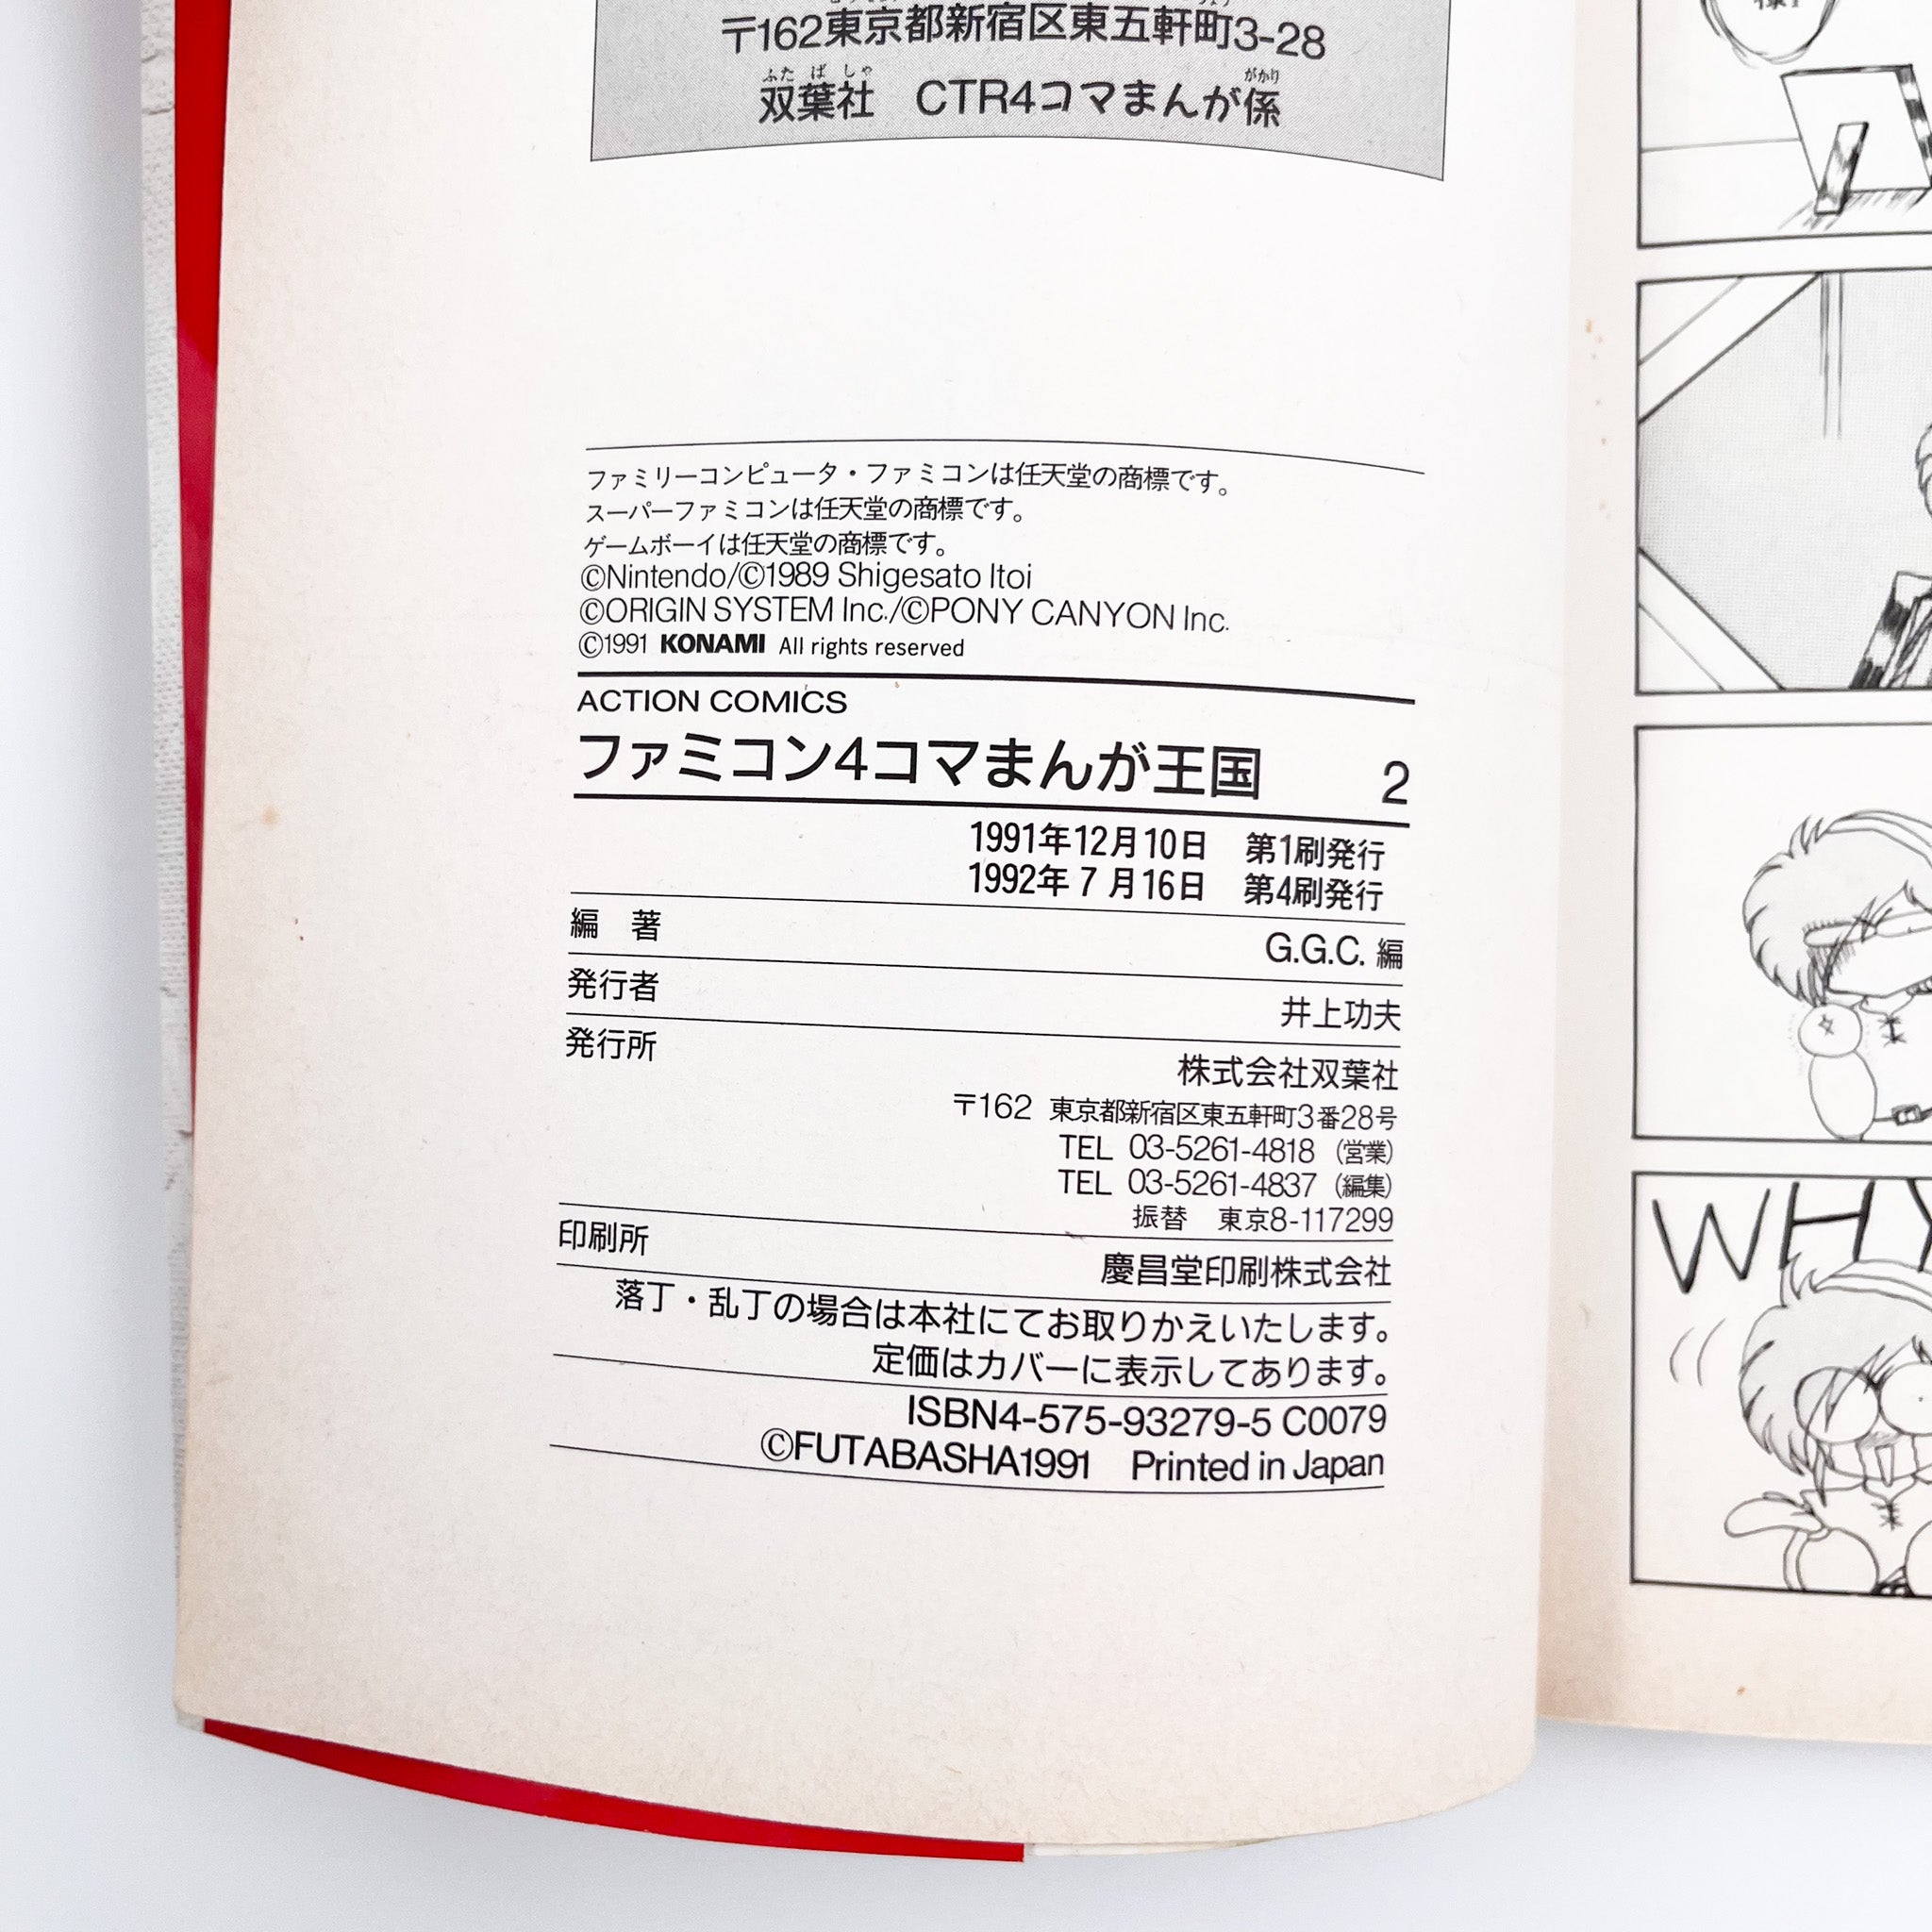 Famicom 4koma Manga Kingdom, Volume 2 (1992)